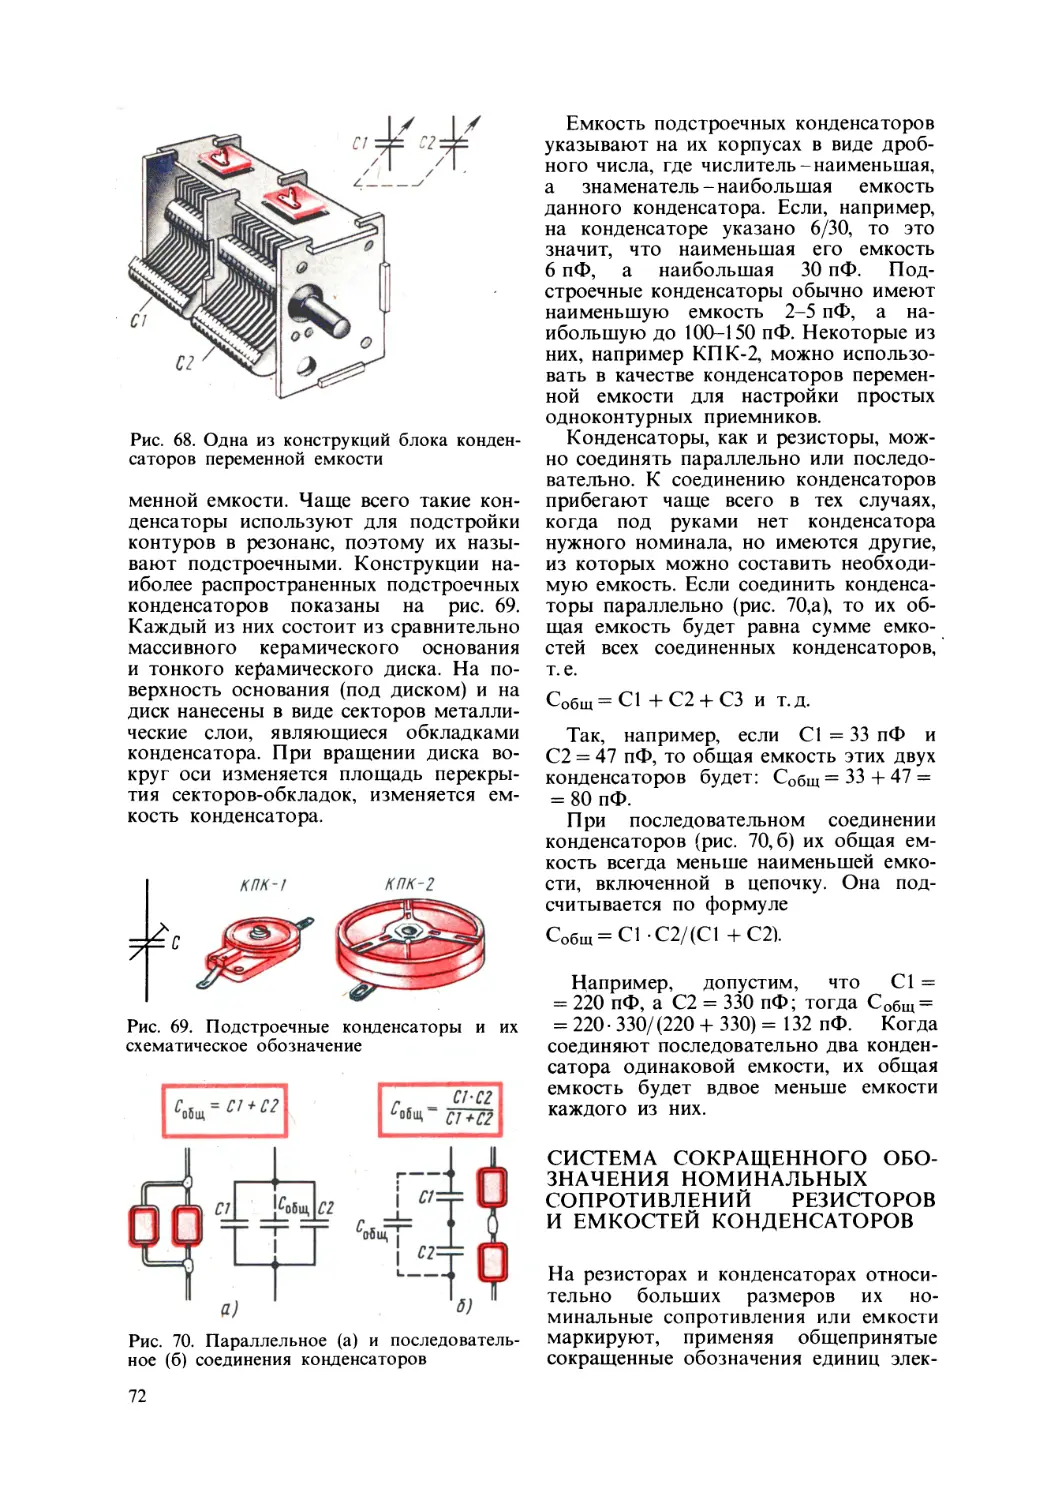 Система сокращенного обозначения номинальных сопротивлений резисторов и емкостей конденсаторов